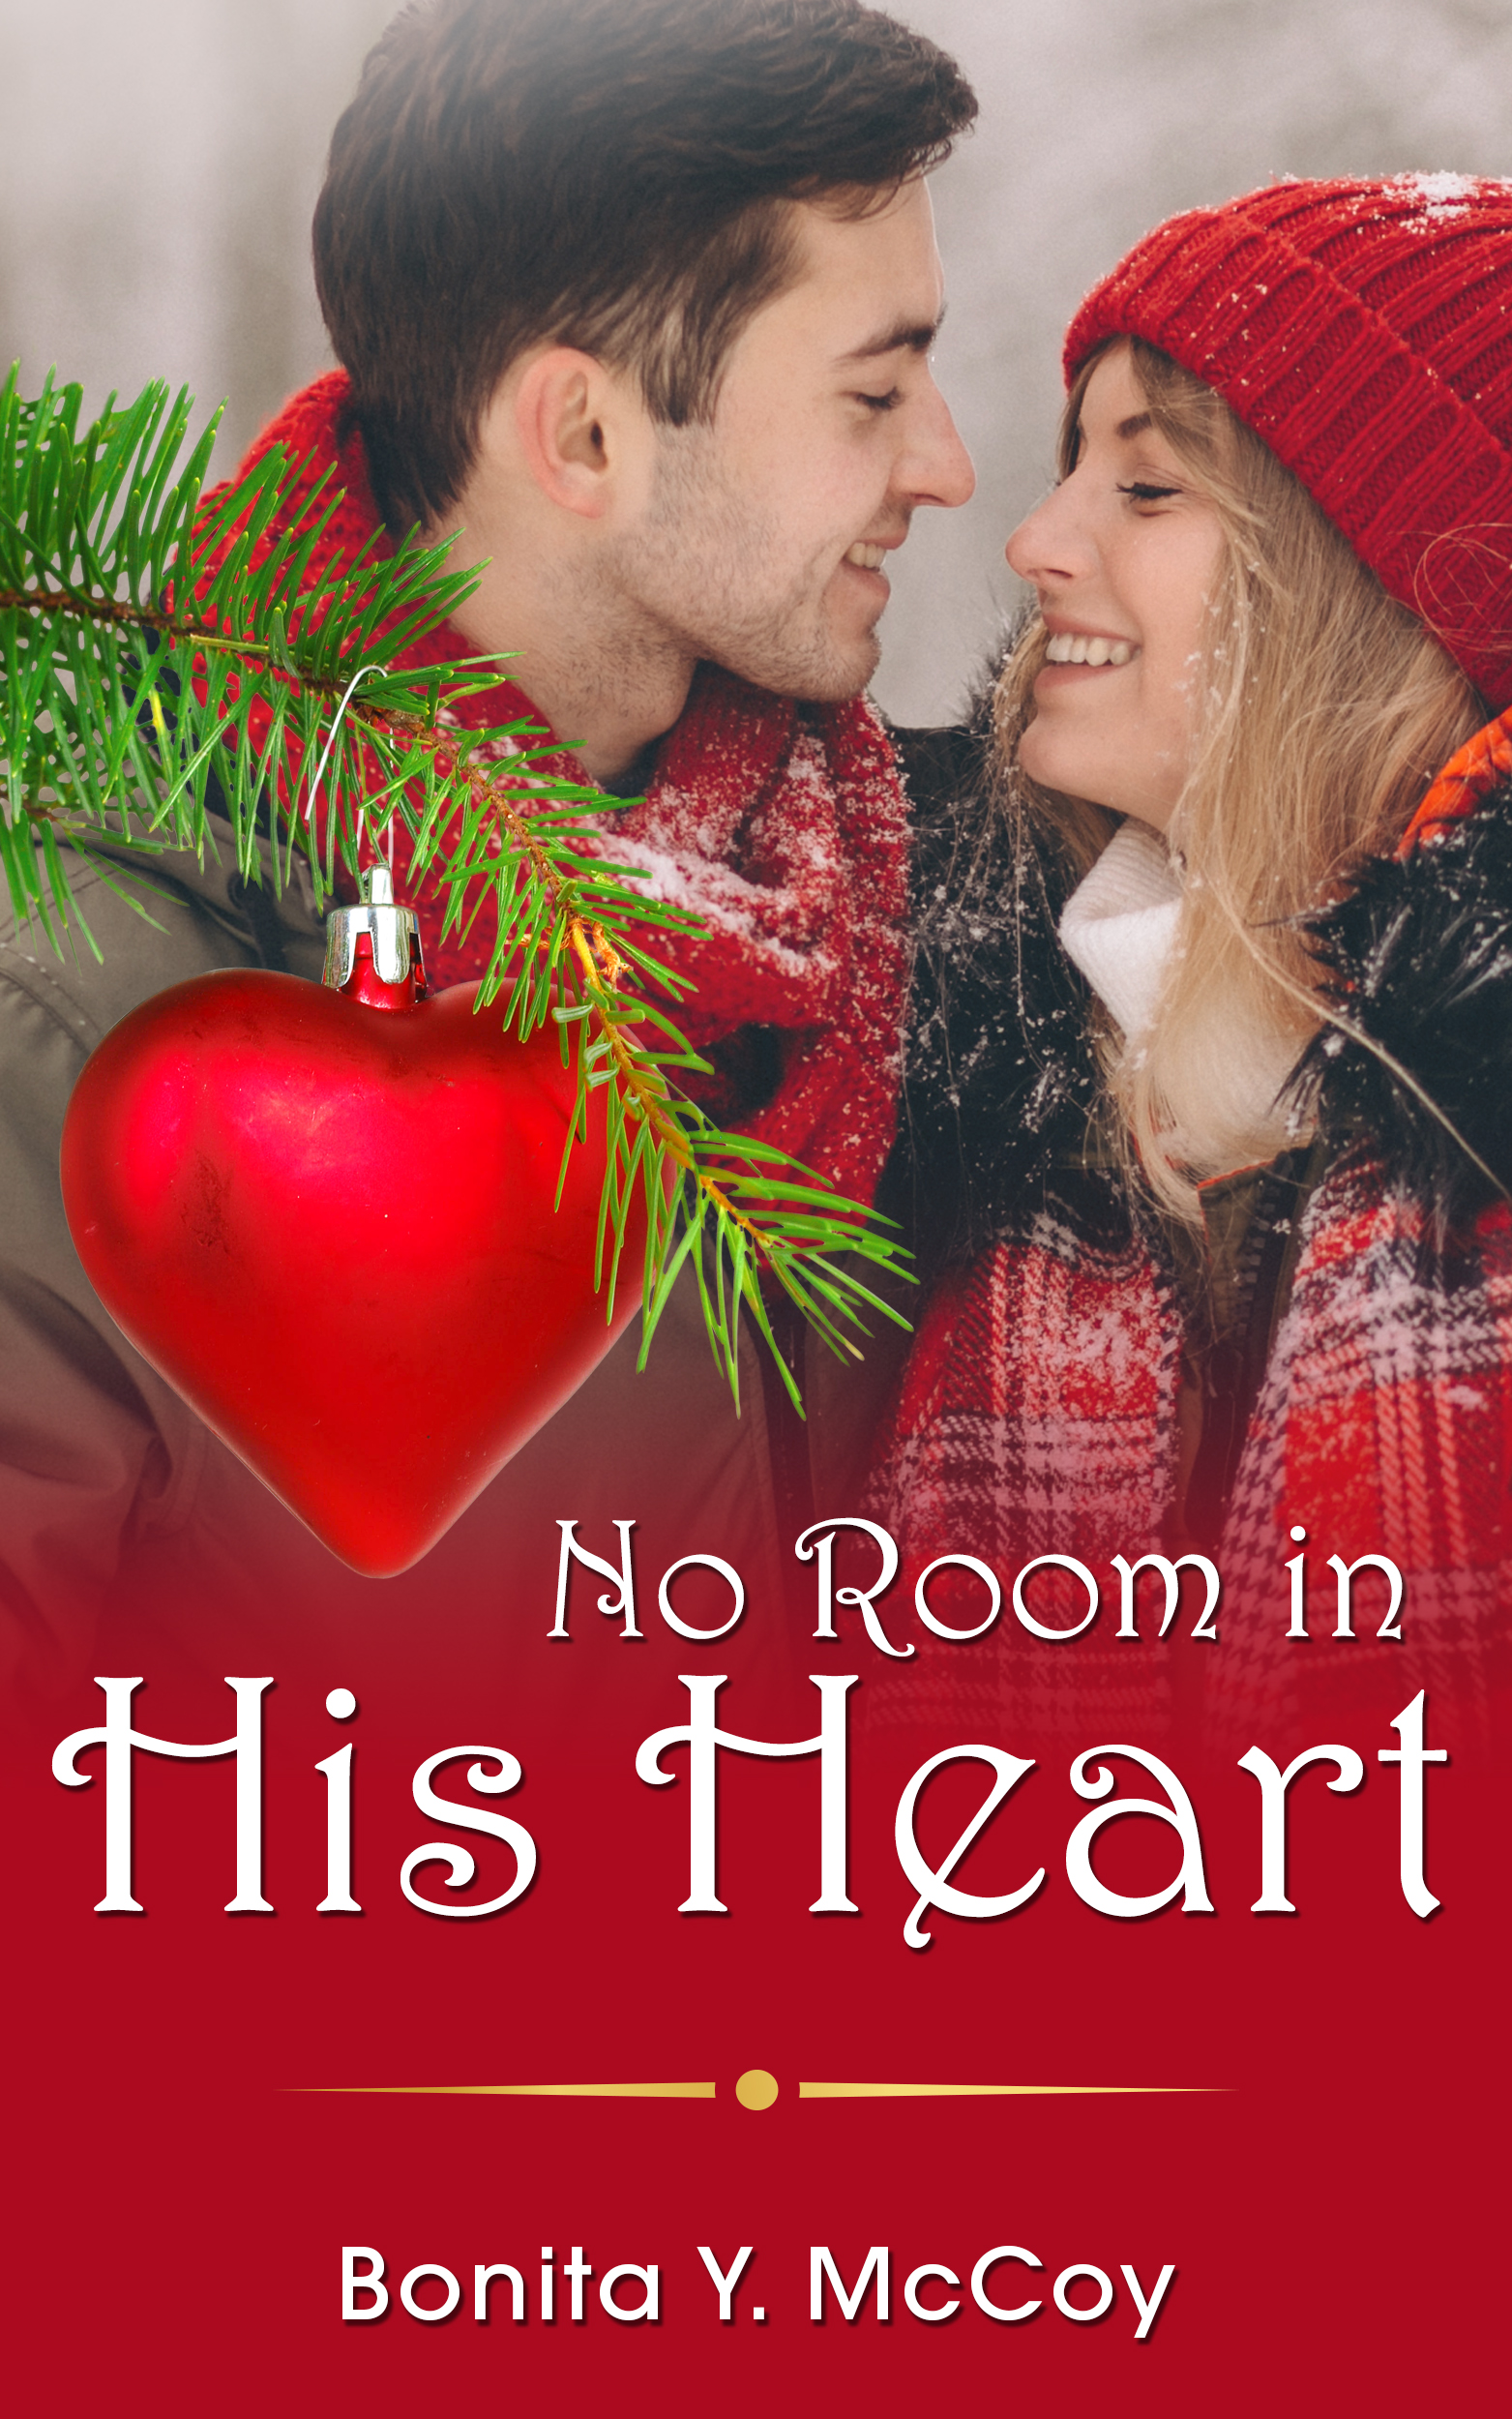 No Room In His Heart by Bonita Y. McCoy